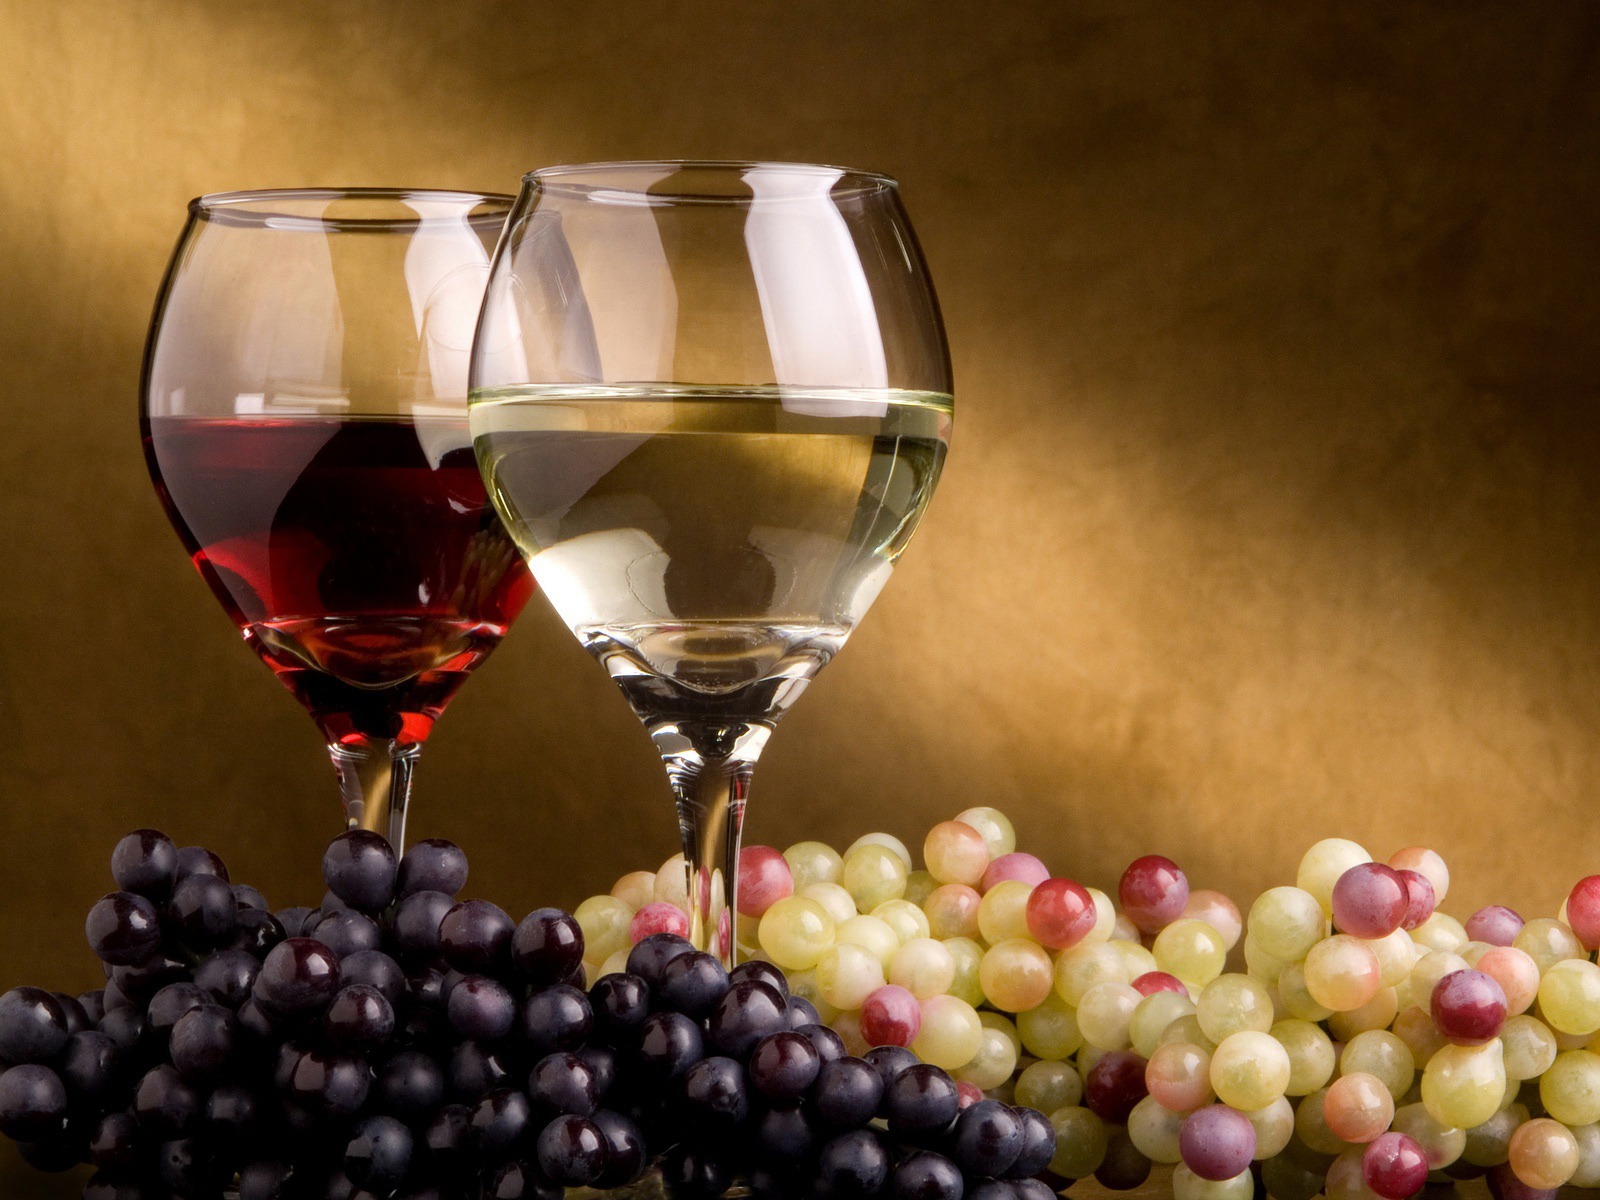 Il corso di introduzione al vino e approfondimento dei suoi abbinamenti col cibo